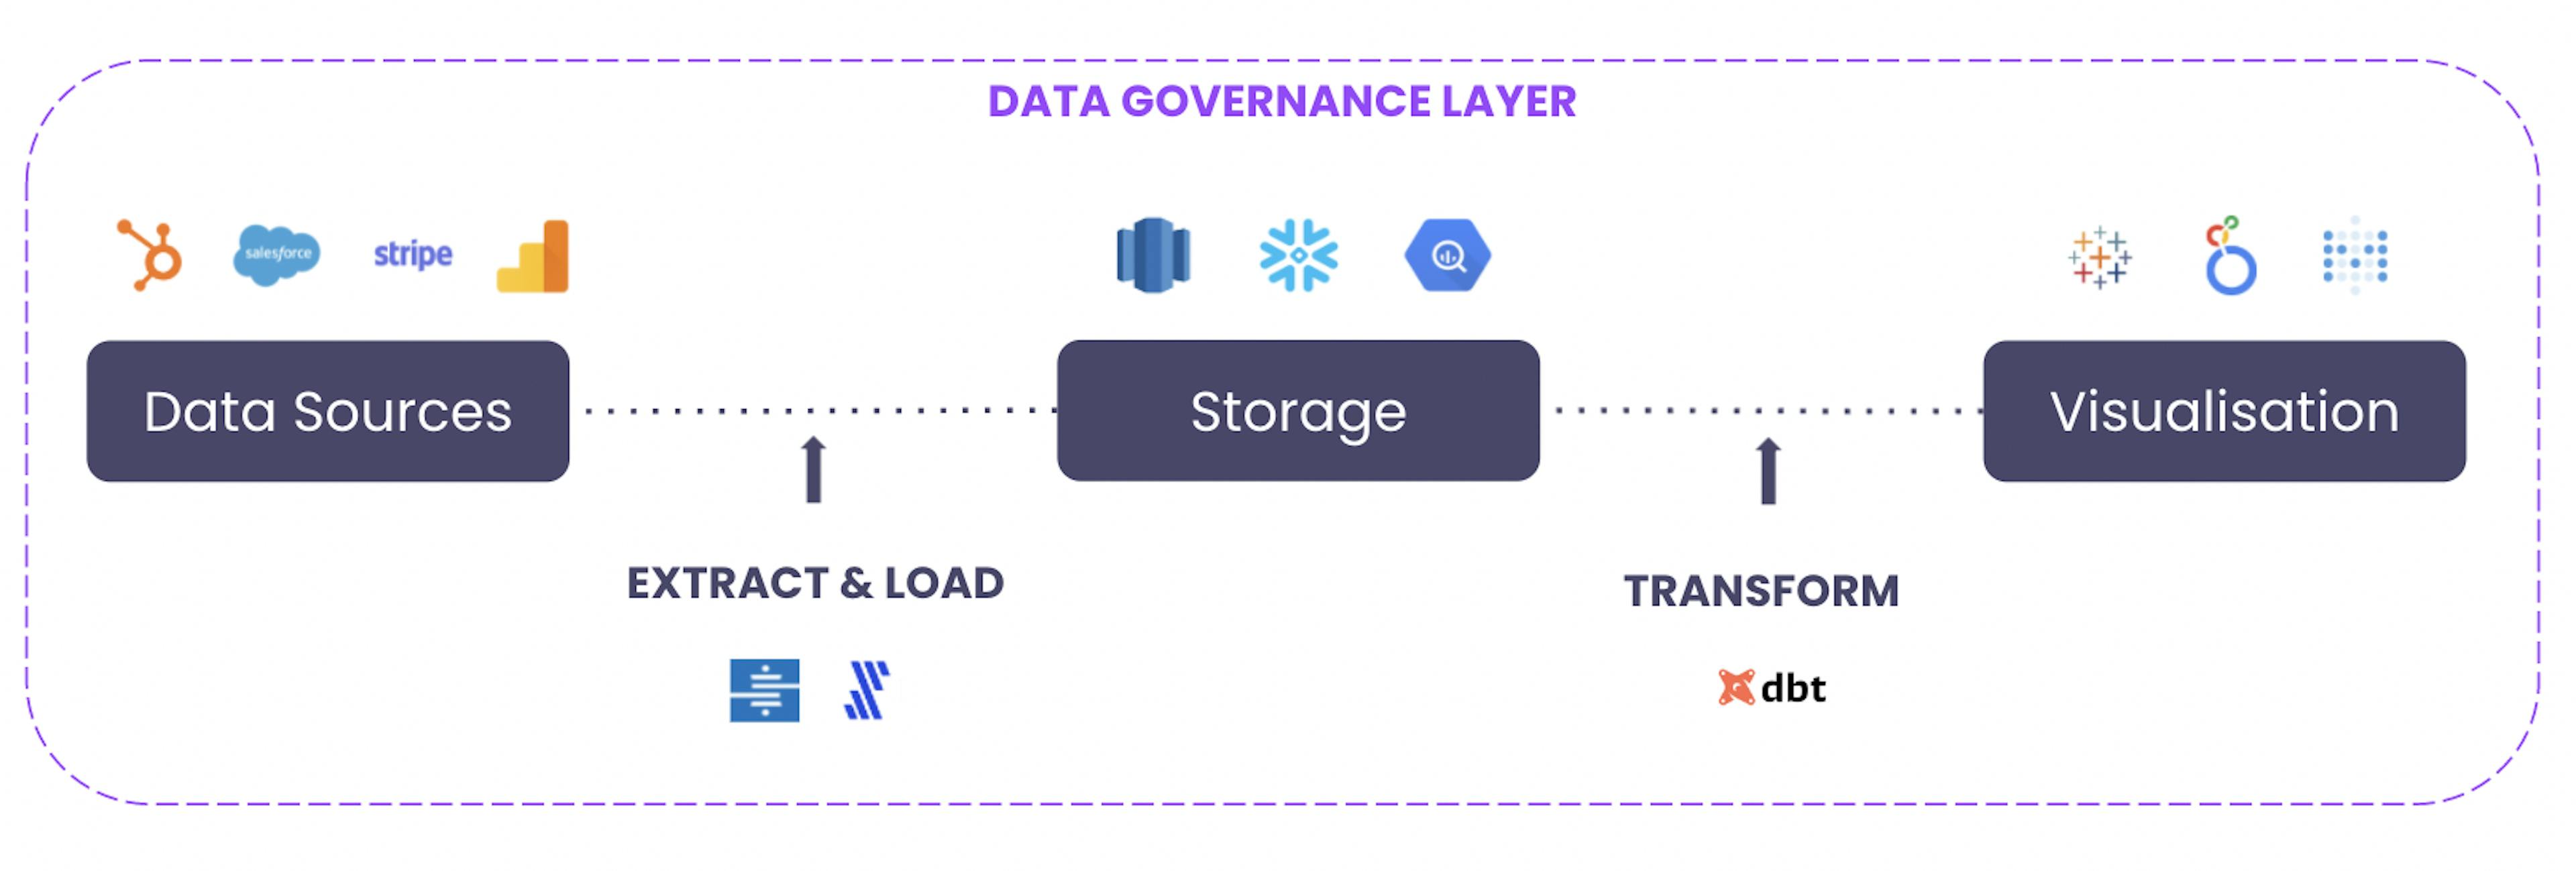 Modern data stack governance - Image by Xavier de Boisredon